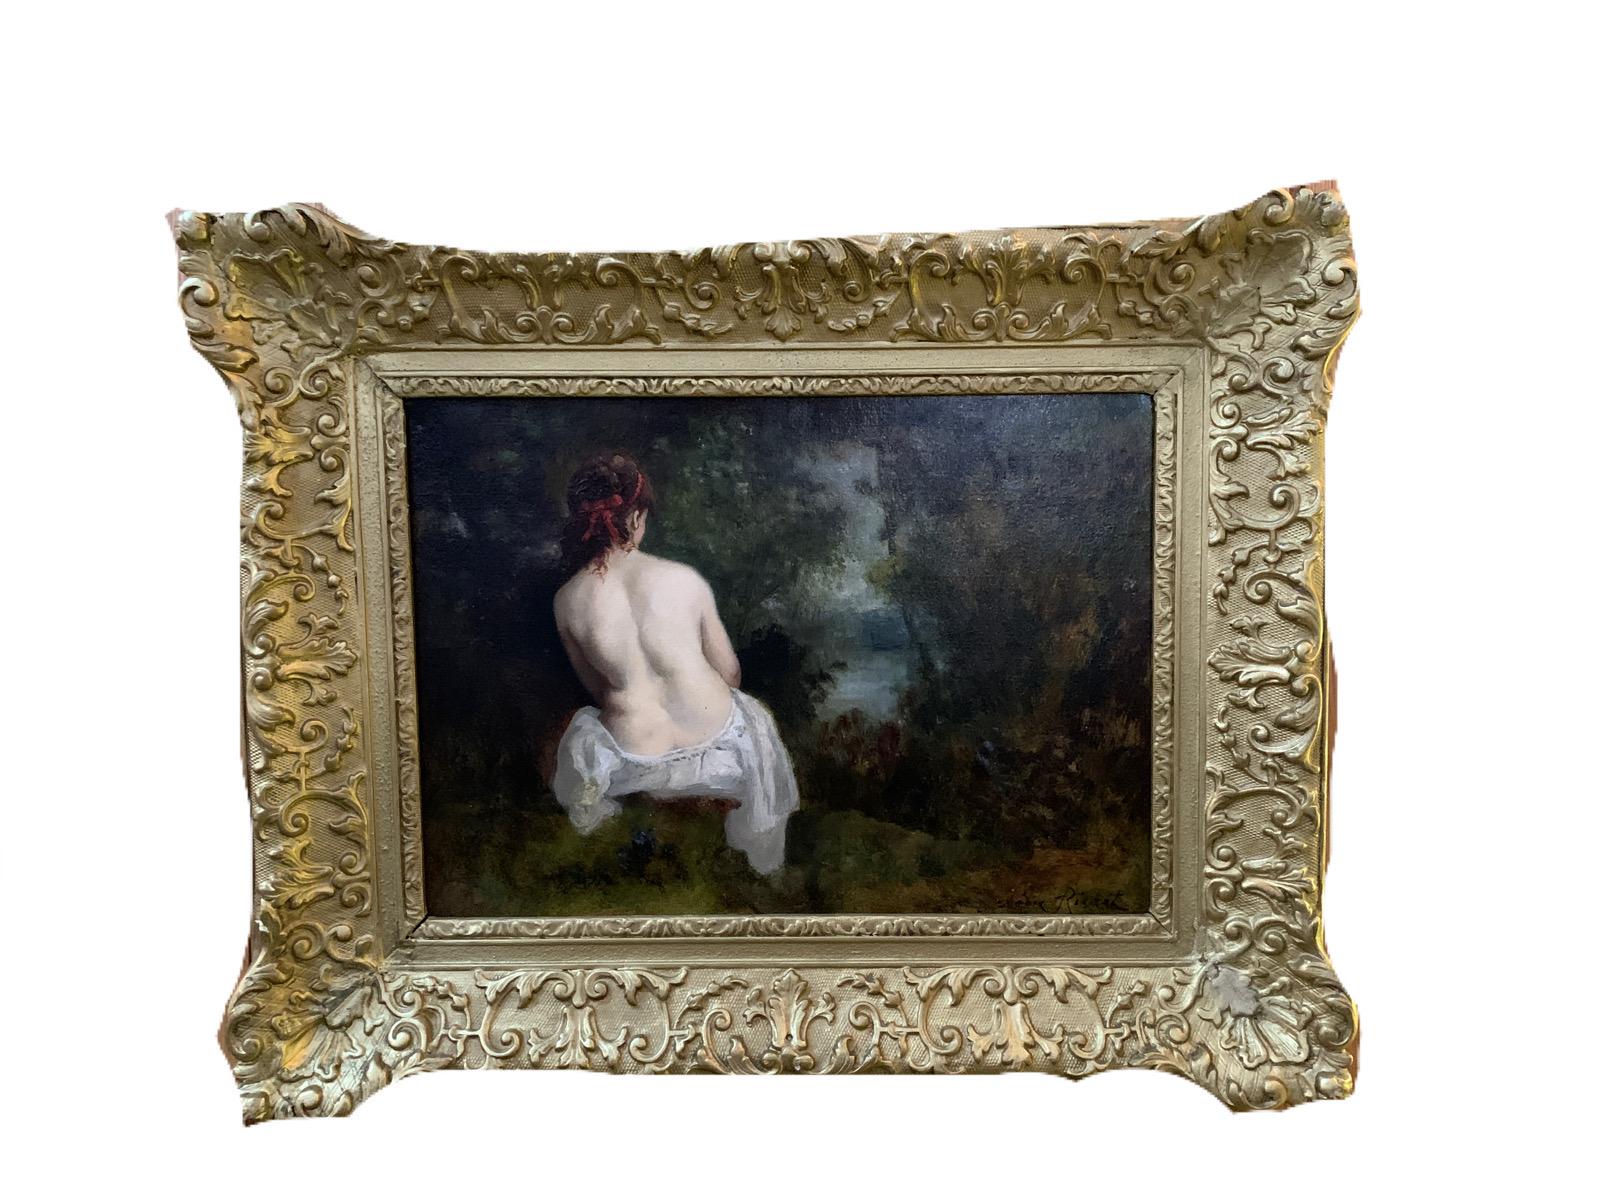 Französischer Akt einer Dame aus dem 19. Jahrhundert in der Waldlandschaft von Barbizon. – Painting von Leon Richet